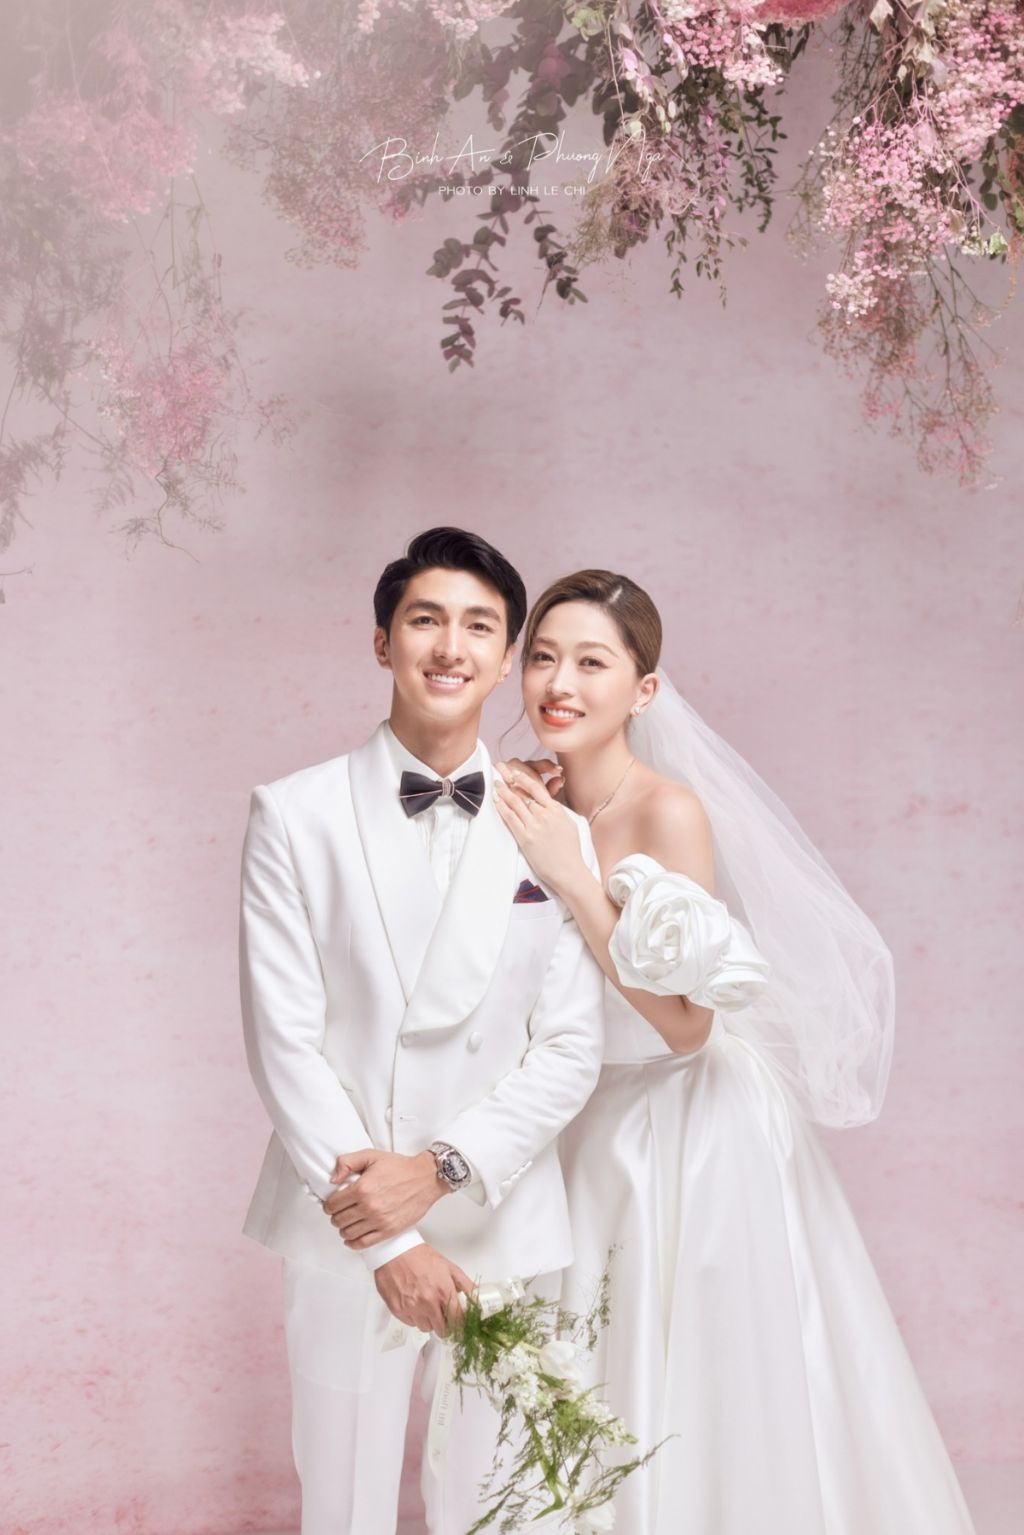 Beautiful Studio + Wedding Đà Nẵng – Studio chụp ảnh cưới Hàn Quốc ttrọn gói giá rẻ nhất